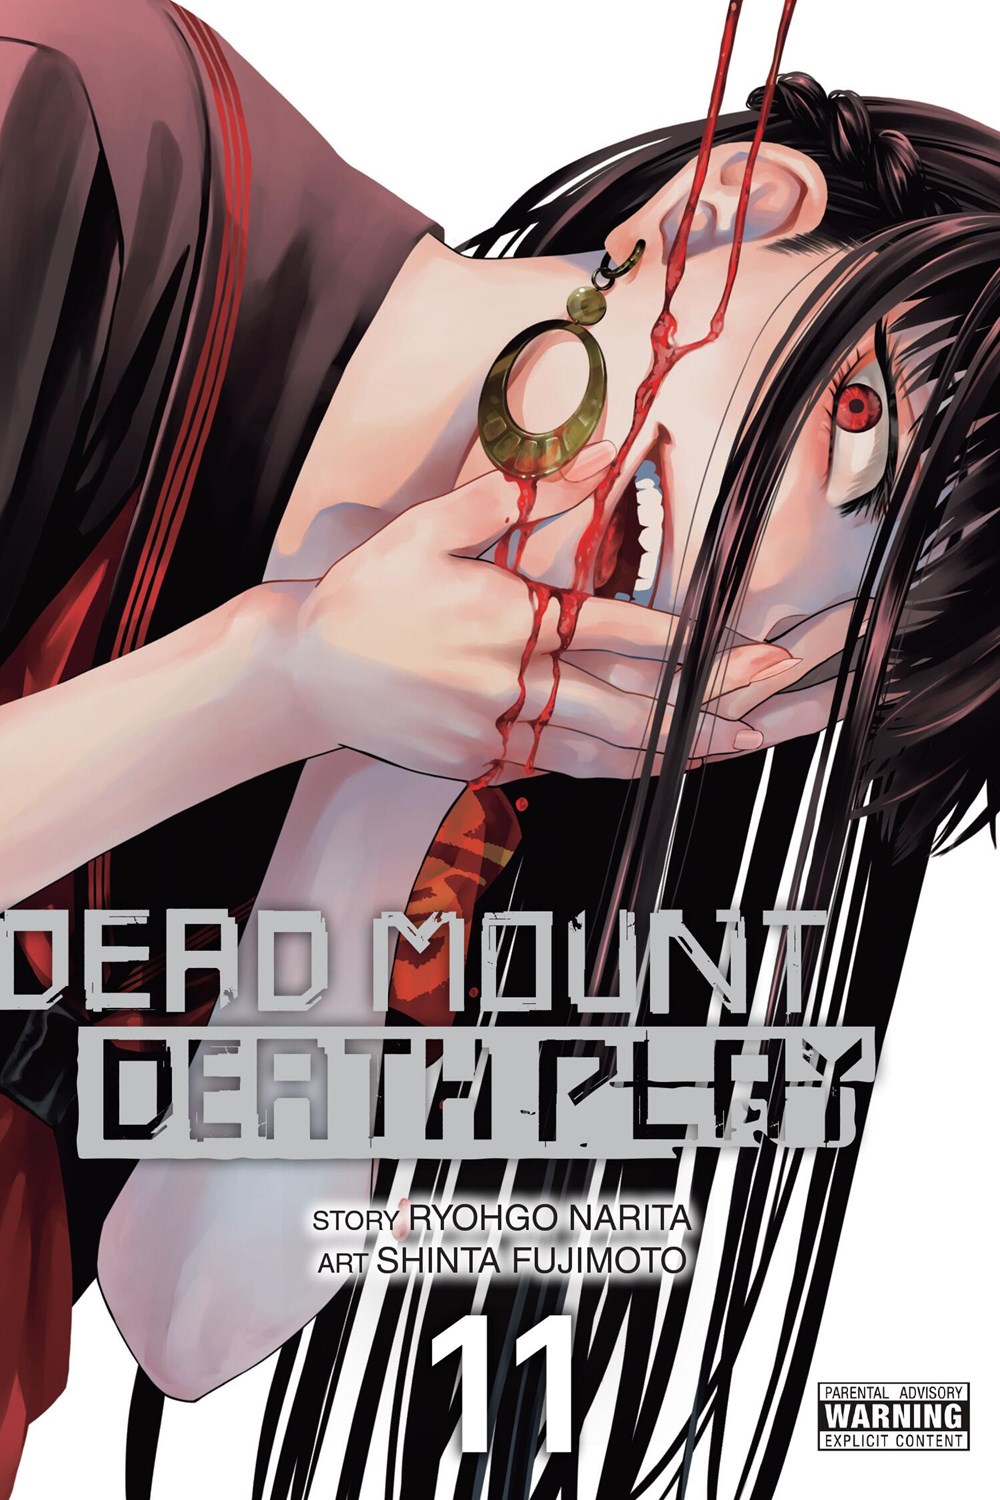  Dead Mount Death Play #98 eBook : Narita, Ryohgo